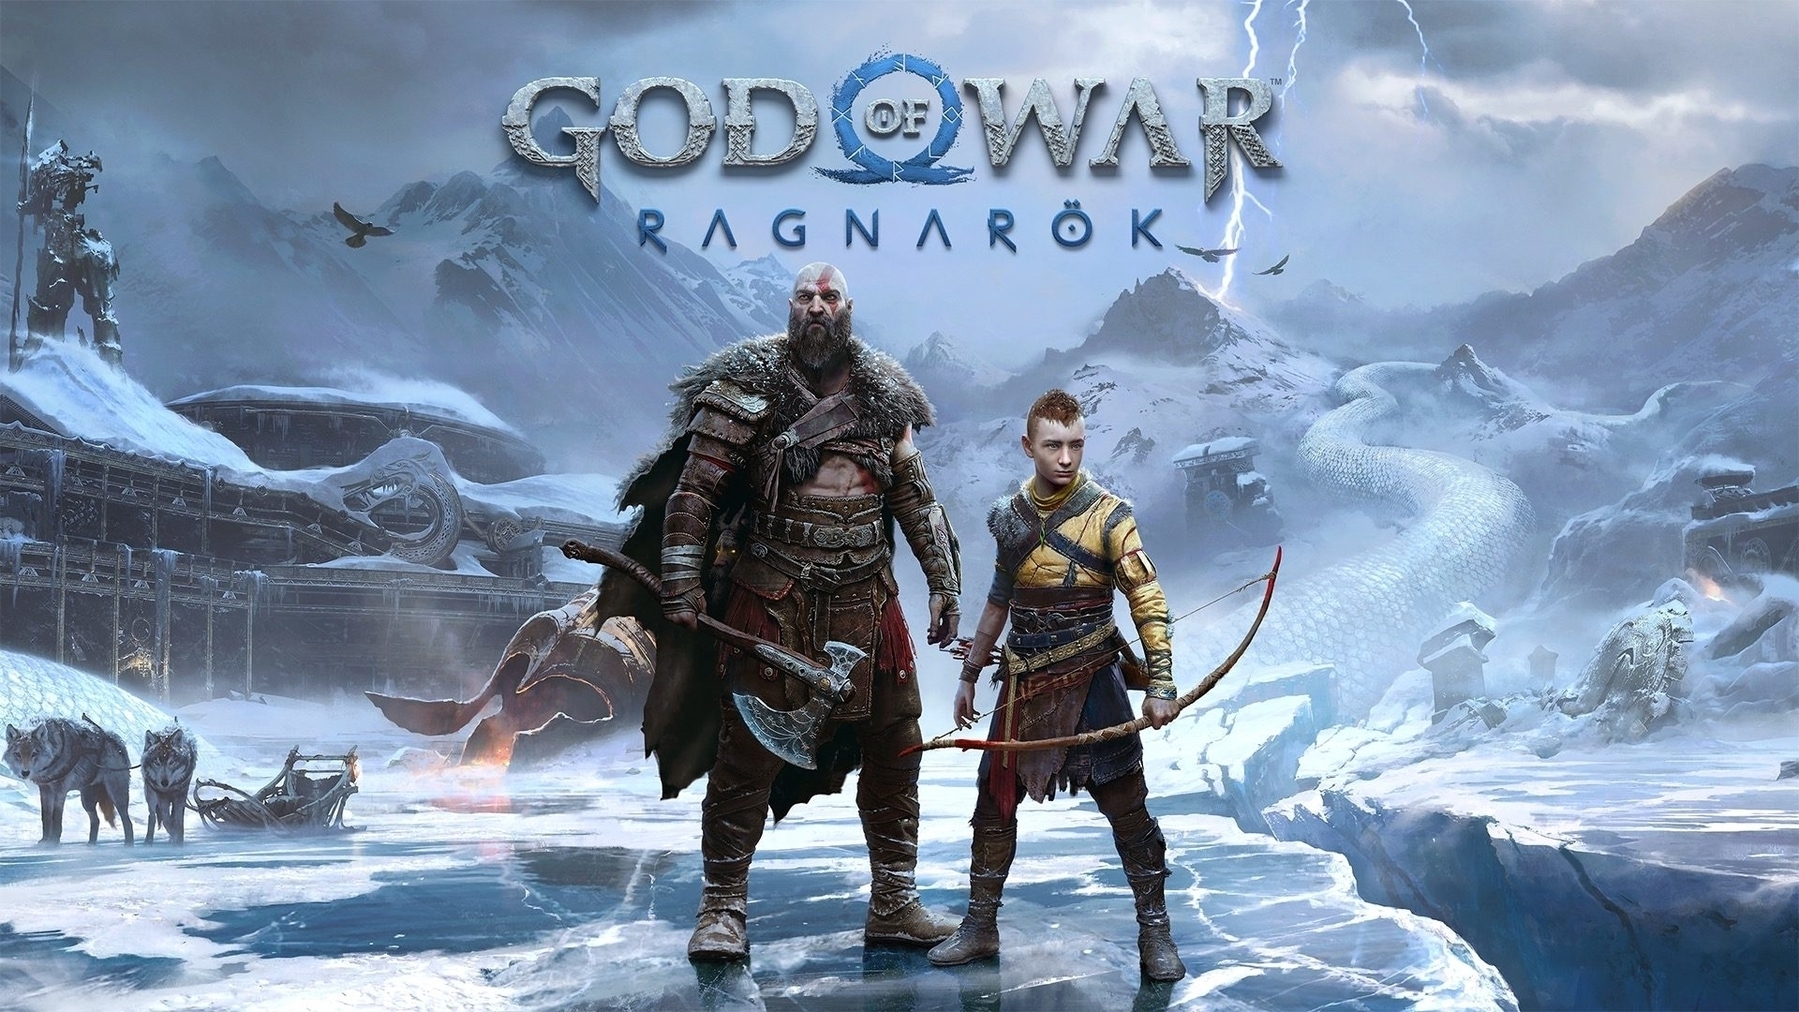 God of war ragnarok hd game poster